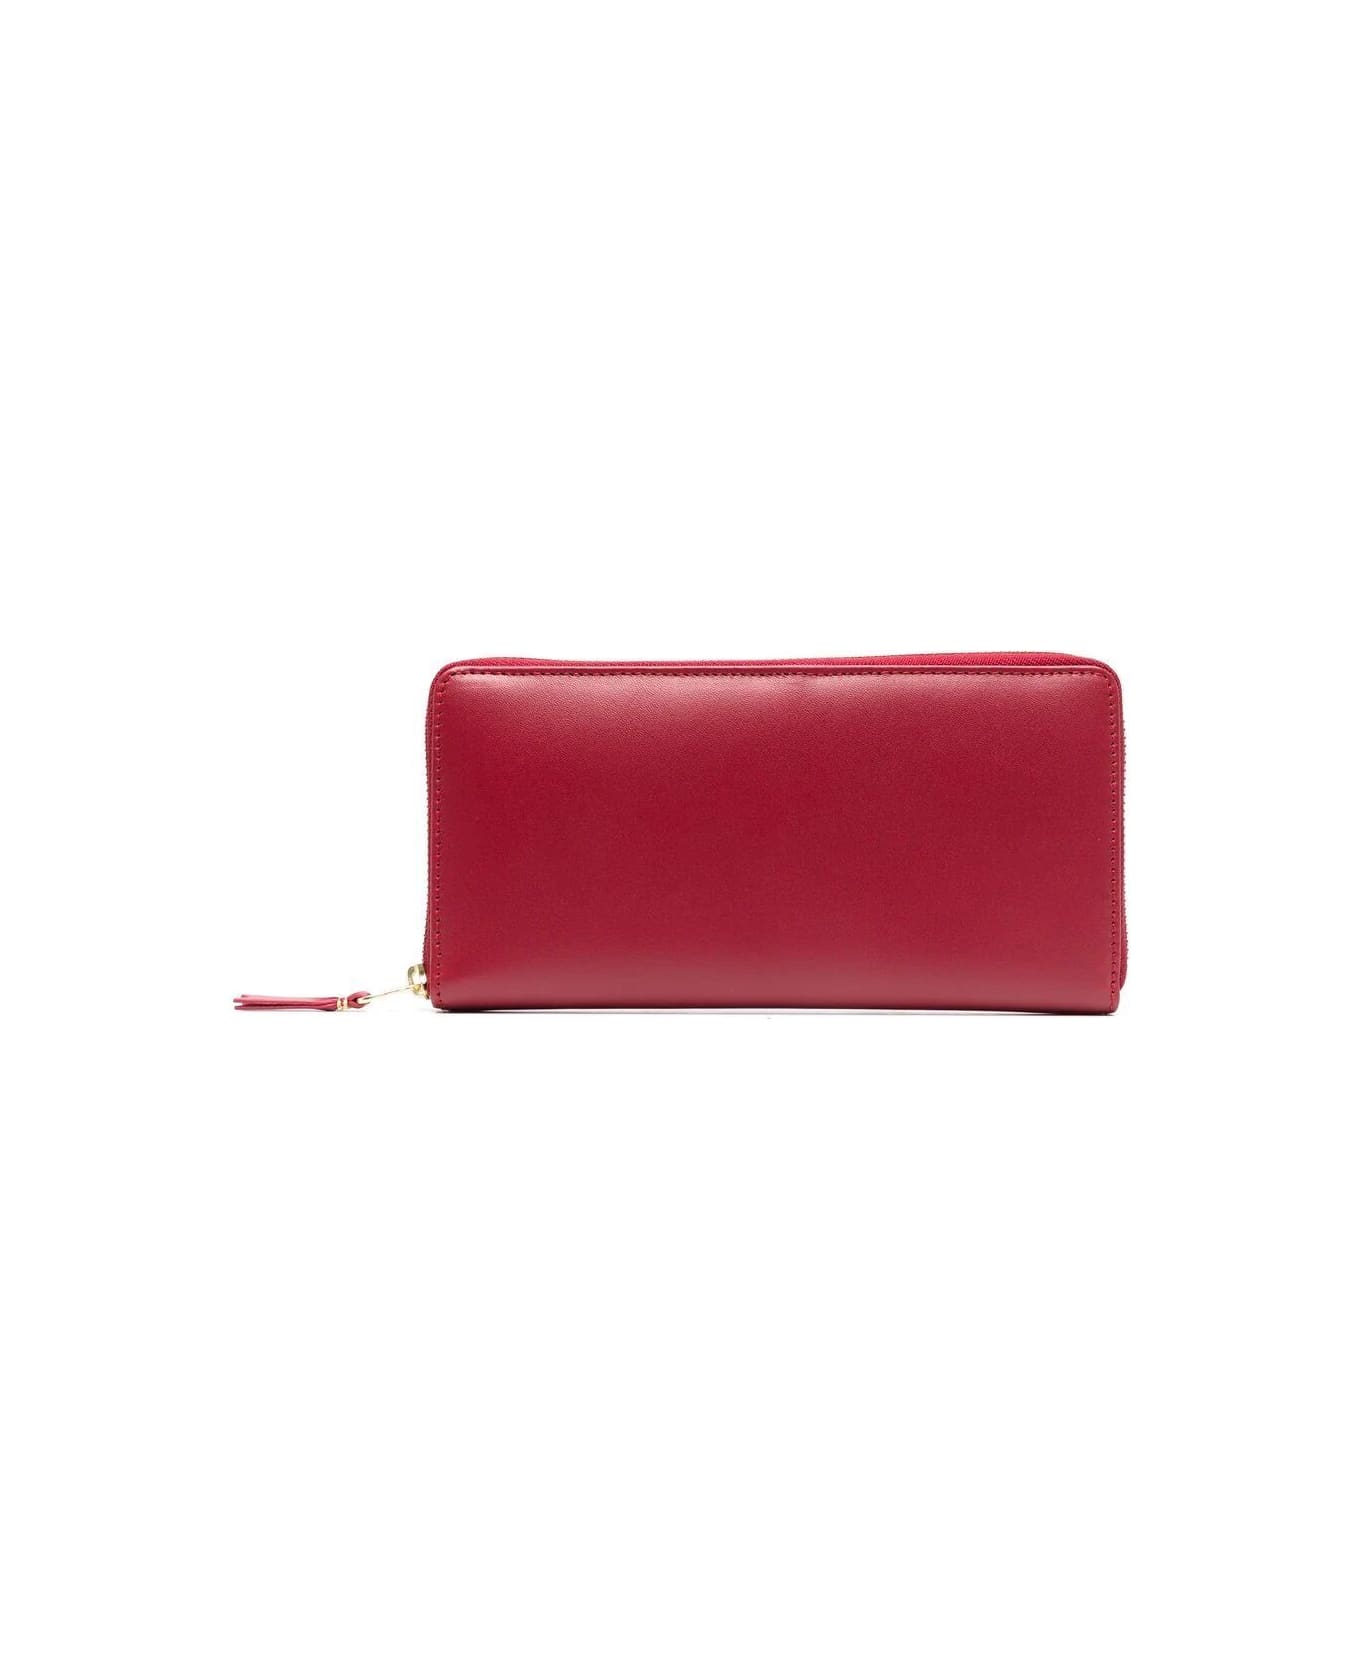 Comme des Garçons Wallet Classic Line Wallet - Red